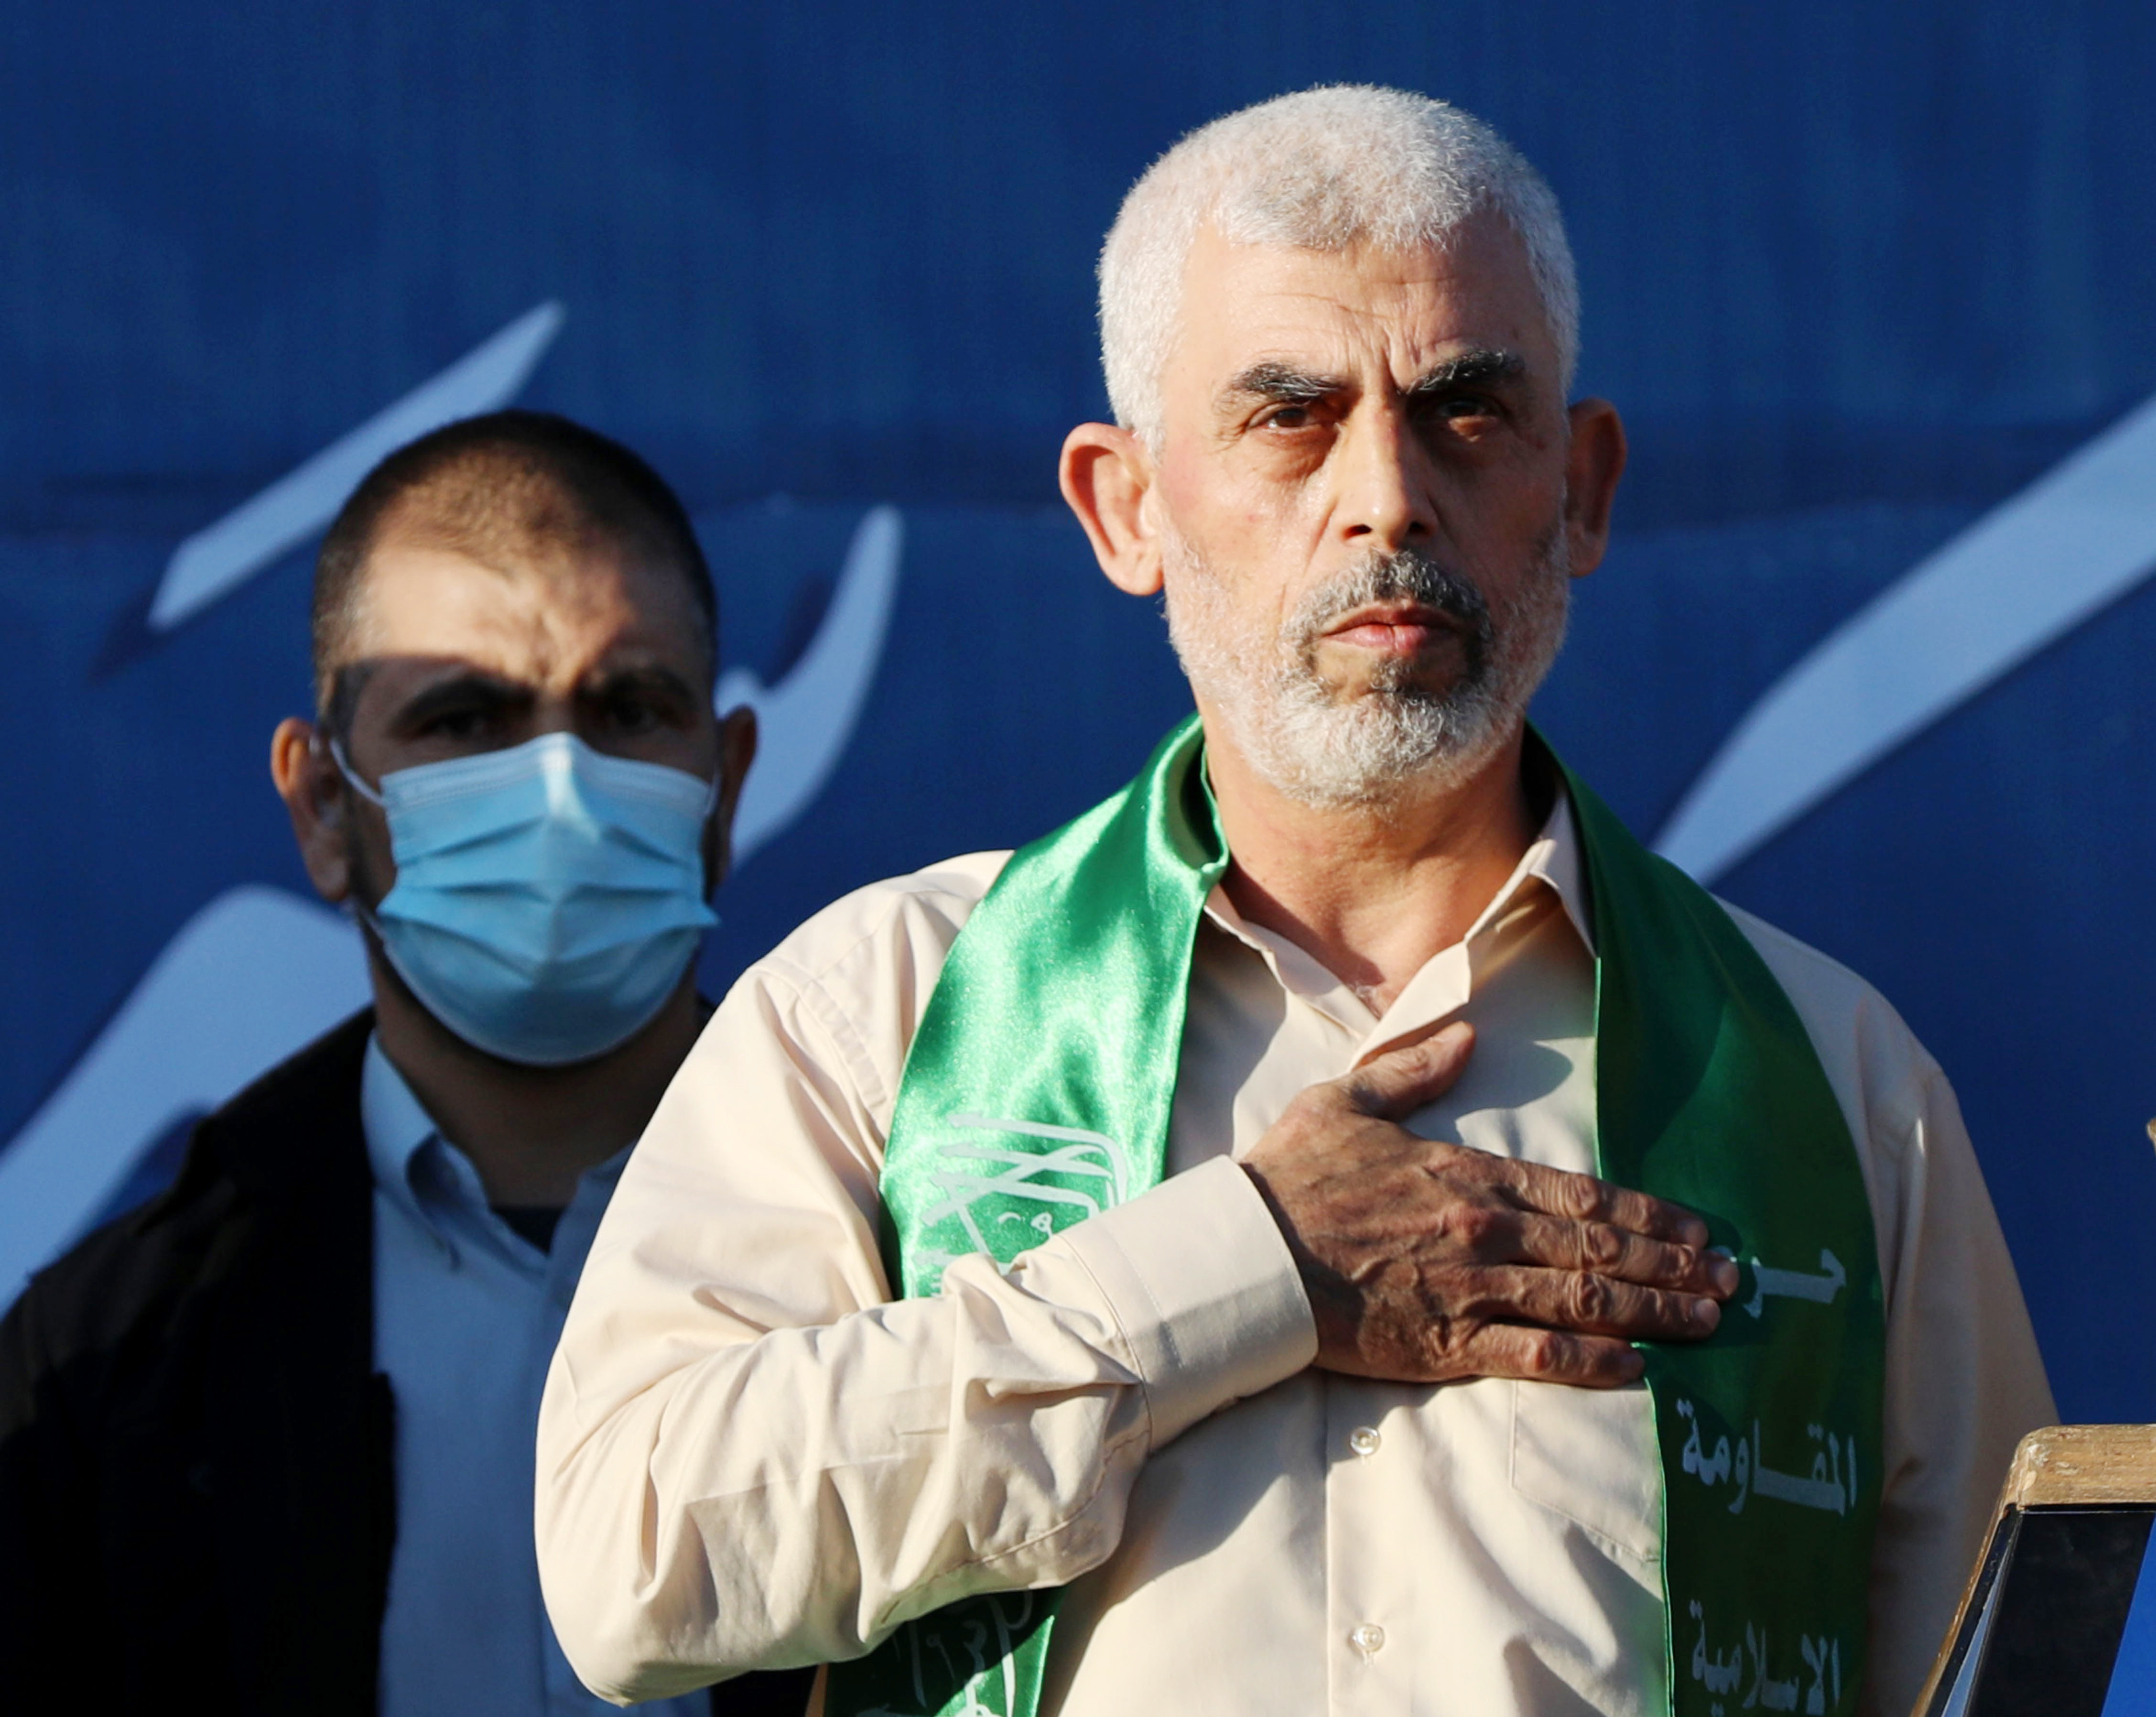 Ein hochrangiger israelischer Beamter beschuldigte den Hamas-Führer Yahya Sinwar – der sich vermutlich unter Rafah versteckt – des Hinhaltens und warnte, es handele sich um „einen Geisel-Deal oder Rafah“.